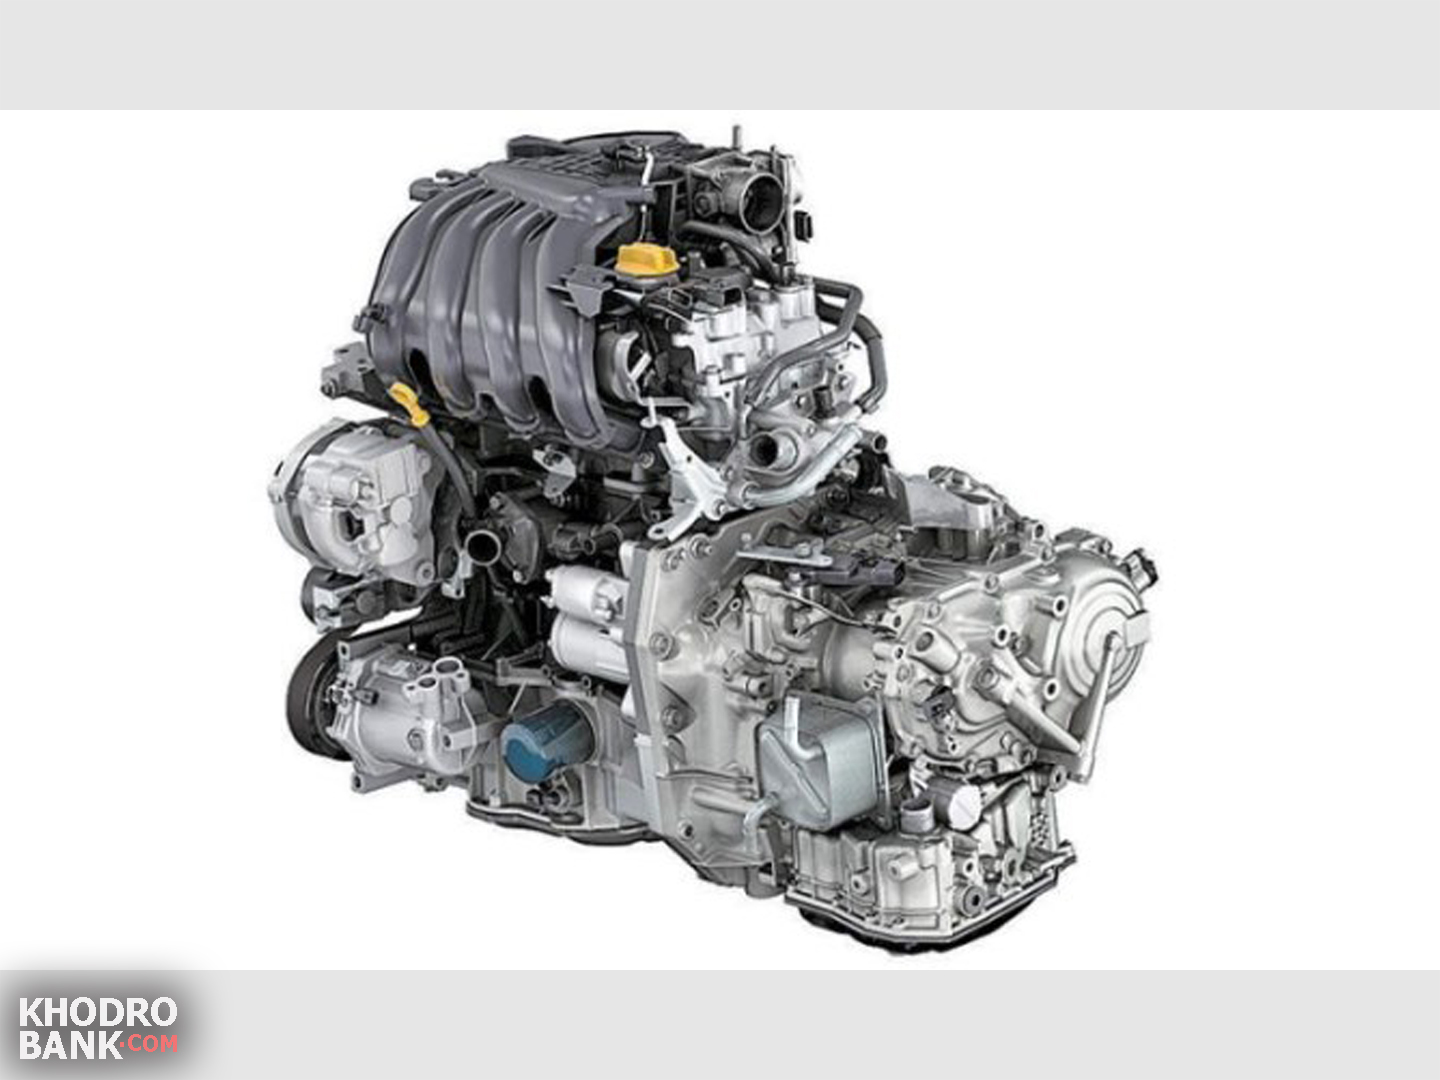 Рено дастер цепь или ремень. Двигатель Renault-Nissan h4m-hr16de. Рено Логан двигатель h4m. Двигатель Renault 1.6 h4m. Hr16de-h4m.